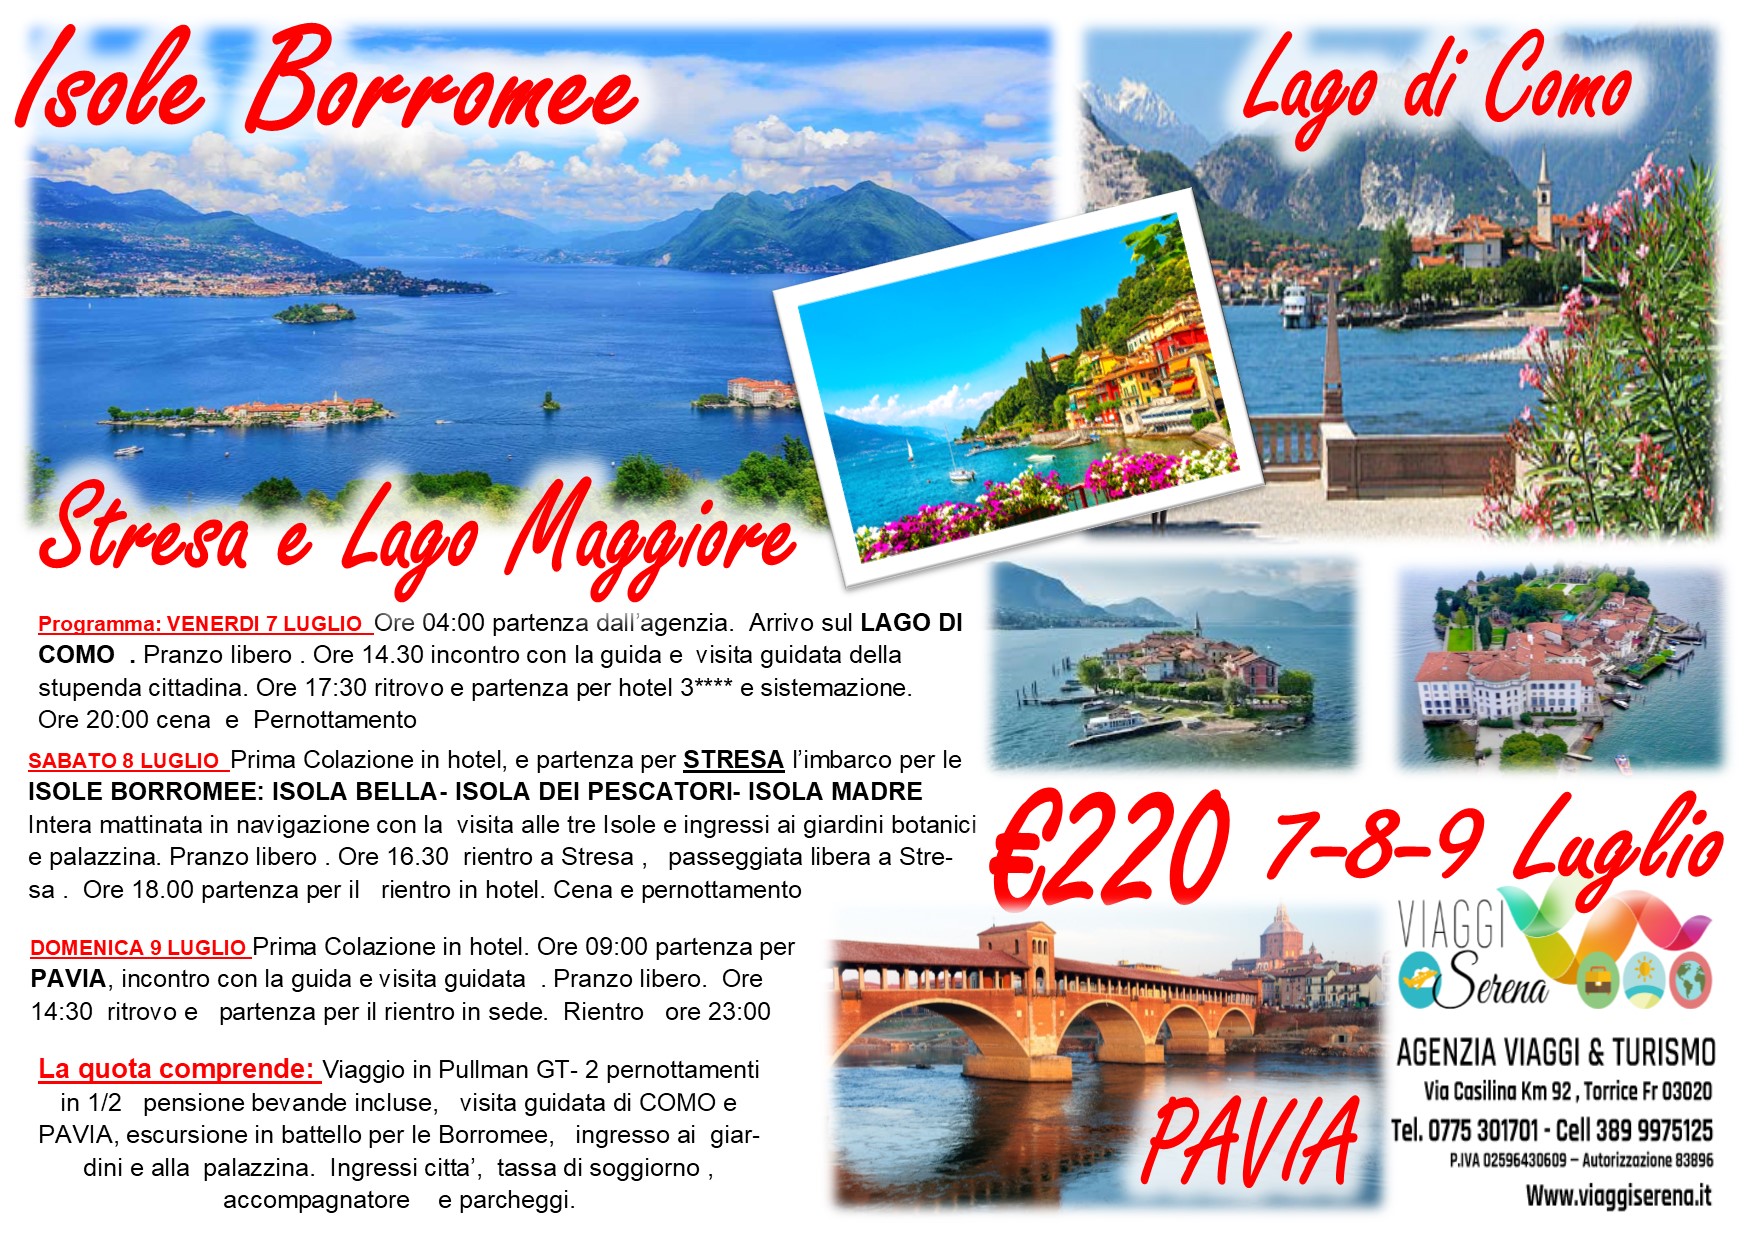 Viaggi di Gruppo: Lago Maggiore, Isole Borromee , Lago di Como & Pavia 7-8-9 Luglio €220,00